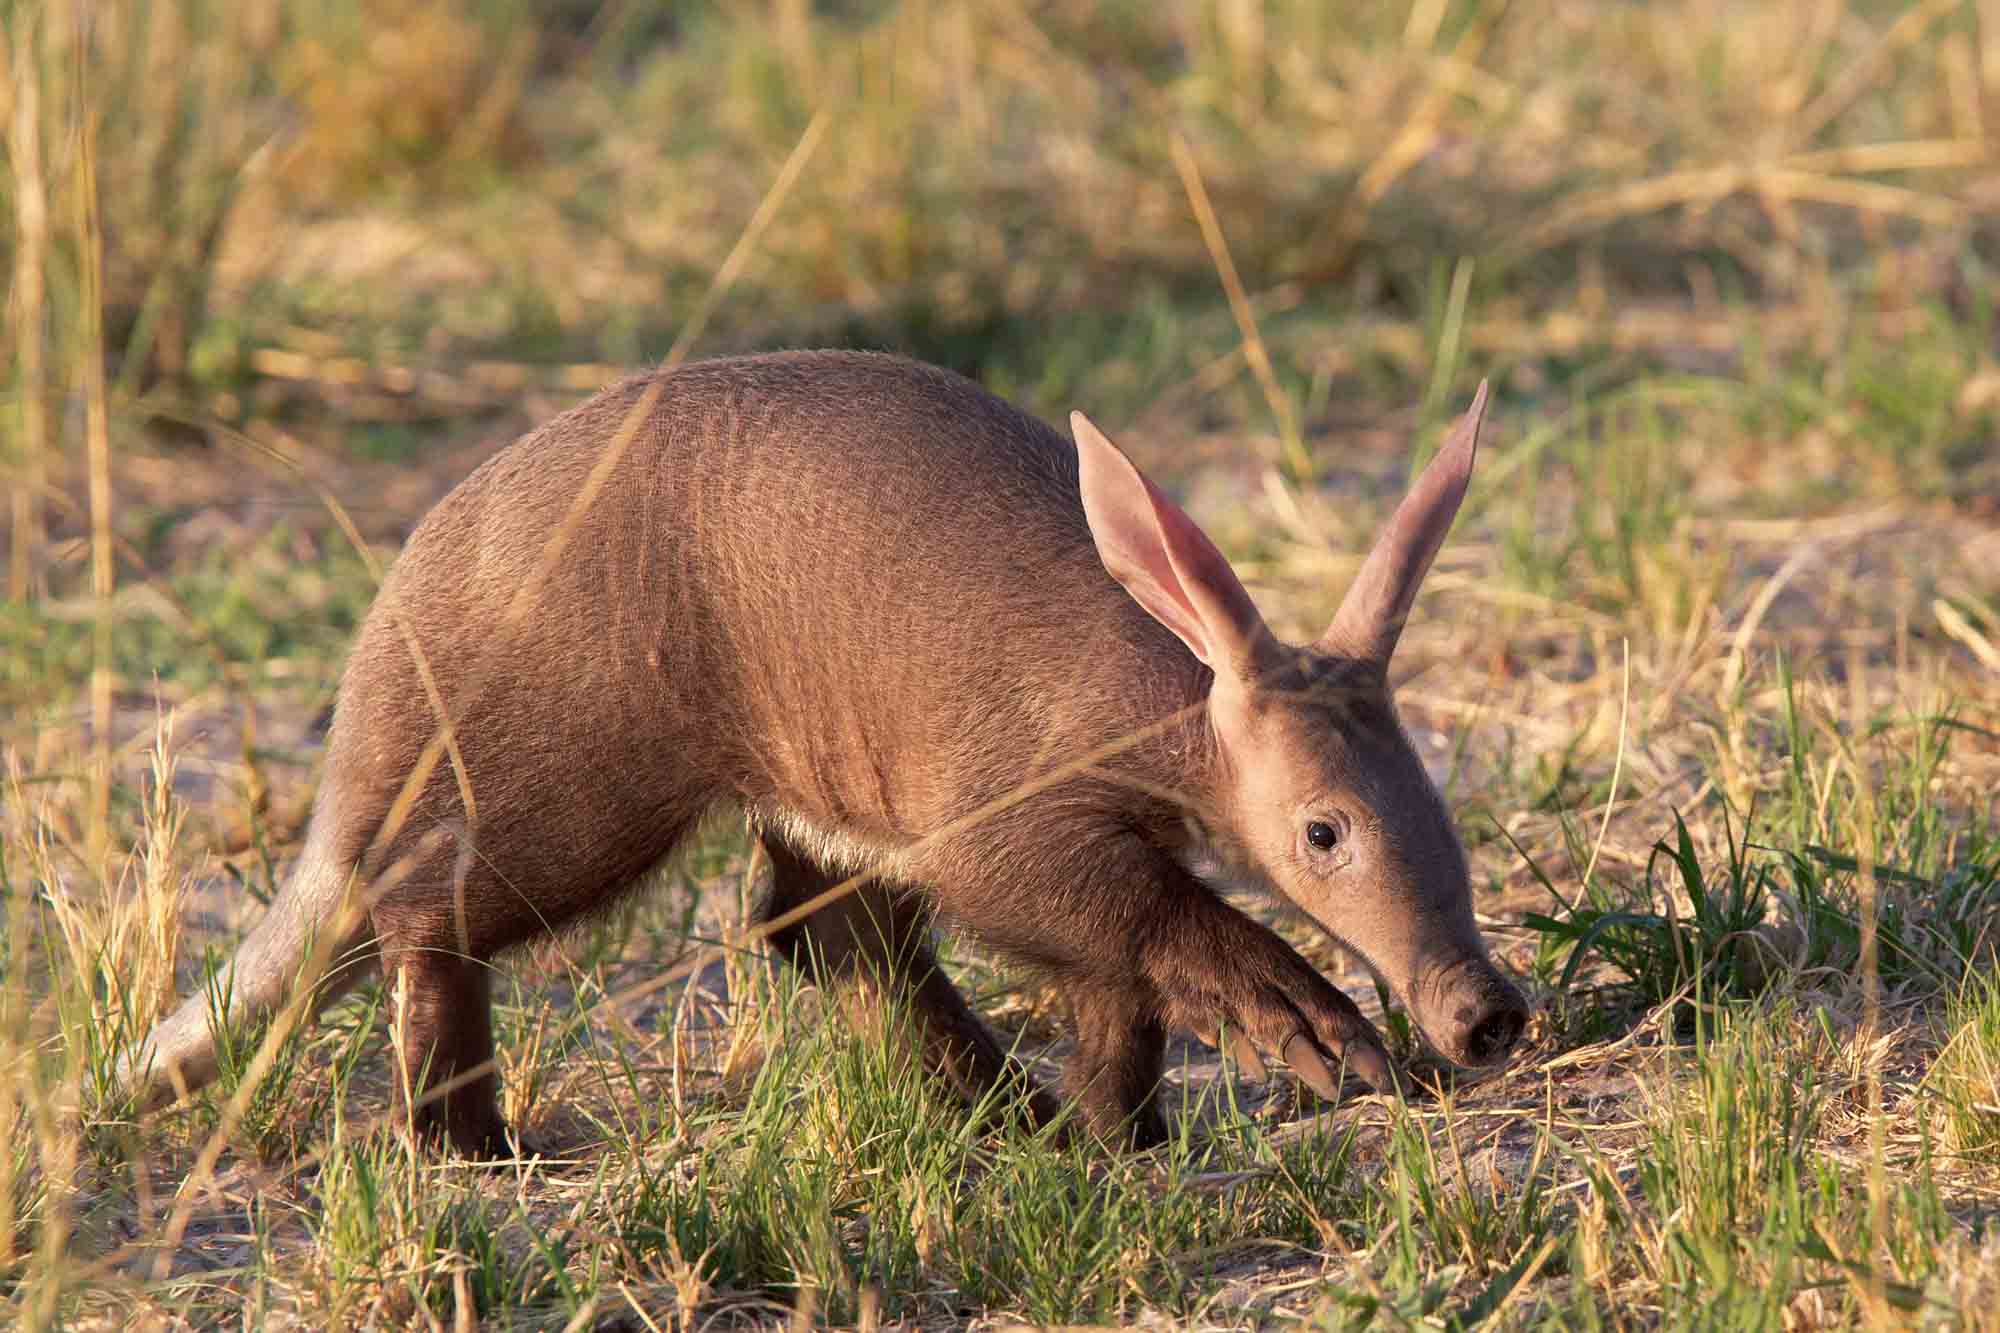 Baby Aardvark in Africa